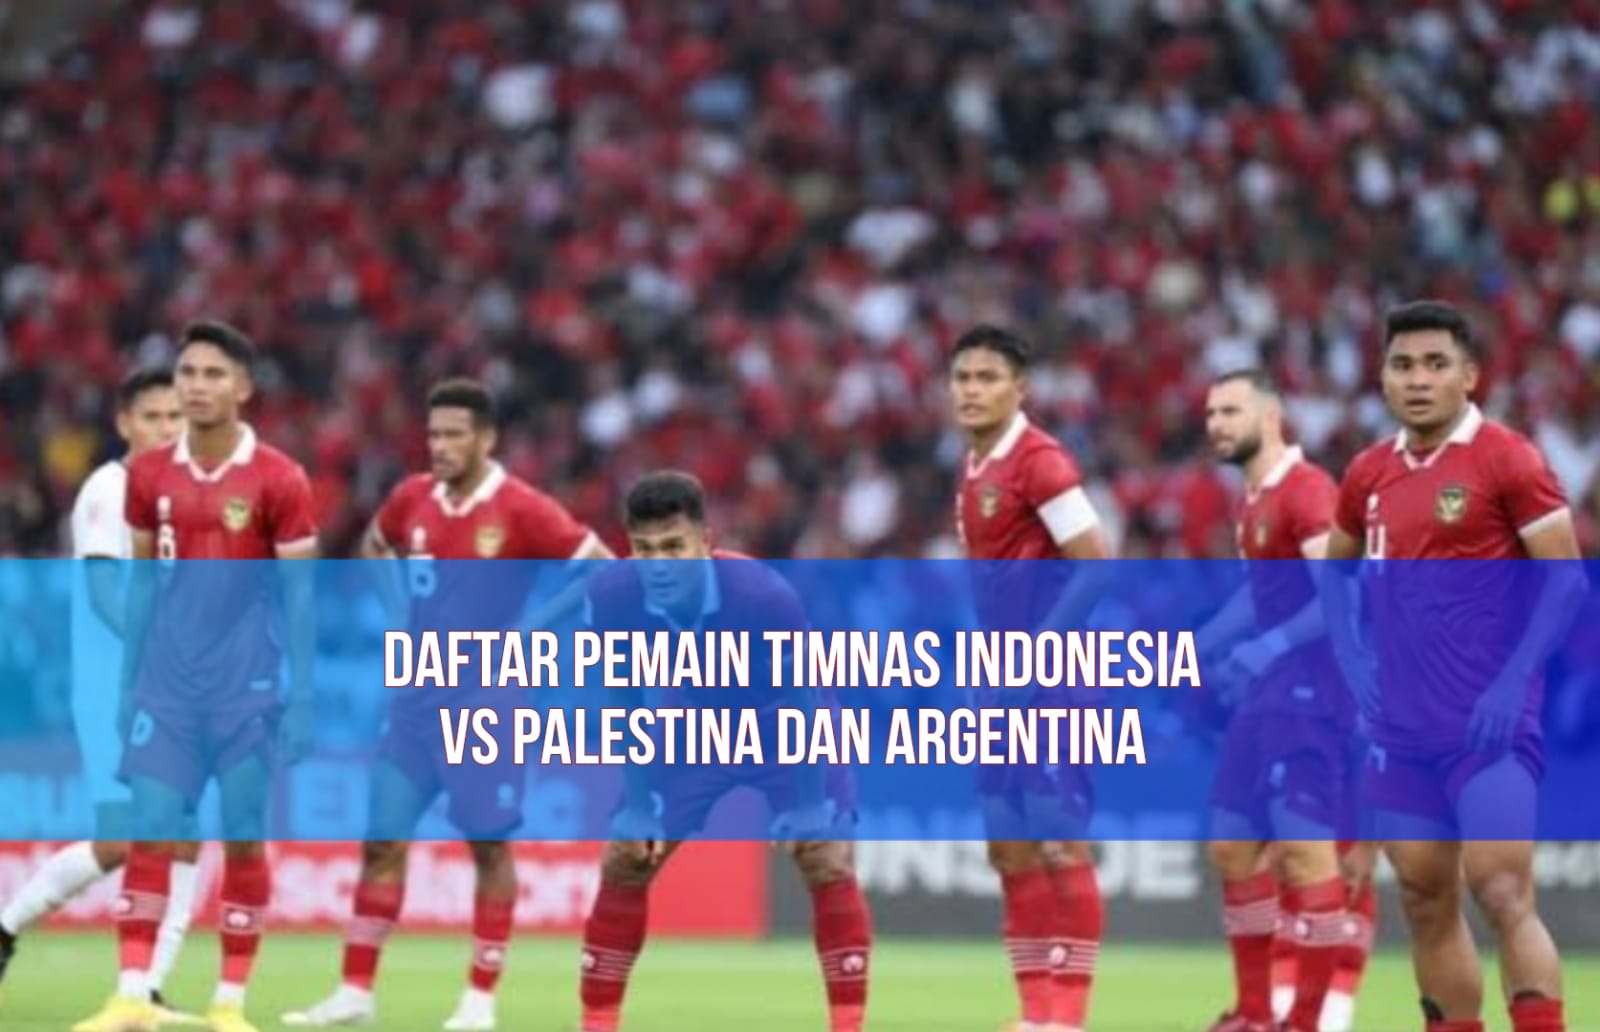 Eggy dan Nadeo Absen! Ini Daftar 26 Pemain Timnas Indonesia untuk Lawan Palestina dan Argentina